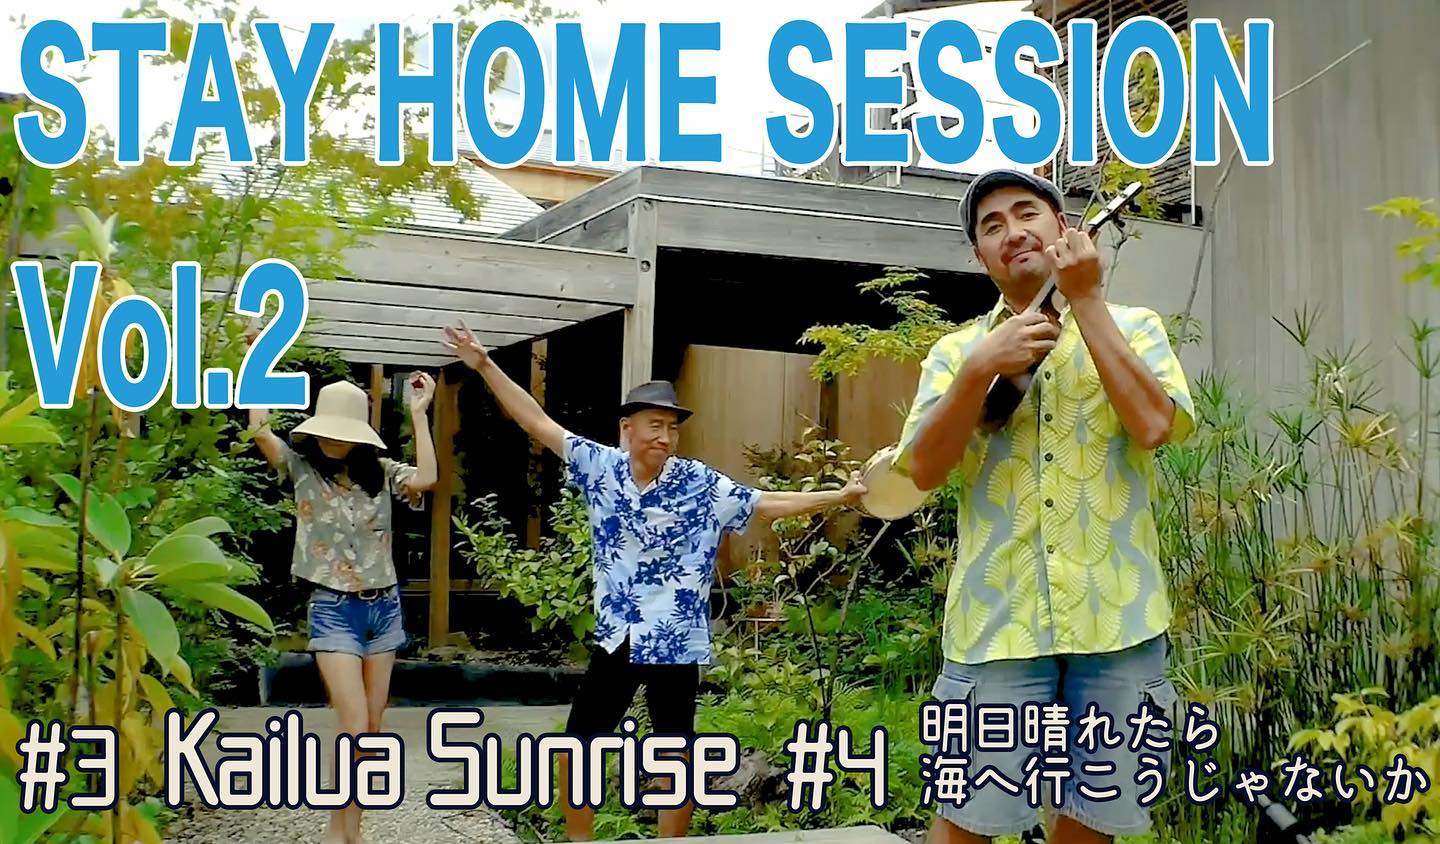 ぱんぱかトリオ自主制作PV“STAY HOME SESSION”第二弾公開しました〜！今回の曲はハワイのKailuaの日の出を描いた”Kailua Sunrise”と”明日晴れたら海へ行こうじゃないか”です！ご視聴は下記アドレスからできます。https://youtu.be/ONx6dhKjomk是非観てみてください〜。ステイホームでも我らの音楽を楽しんでいただけると嬉しいです。youtubeチャンネル高評価、チャンネル登録もしていただけると更に嬉しいです！#カワムラ#ぱんぱかトリオ#stayhomesessions #自主制作#okitahome